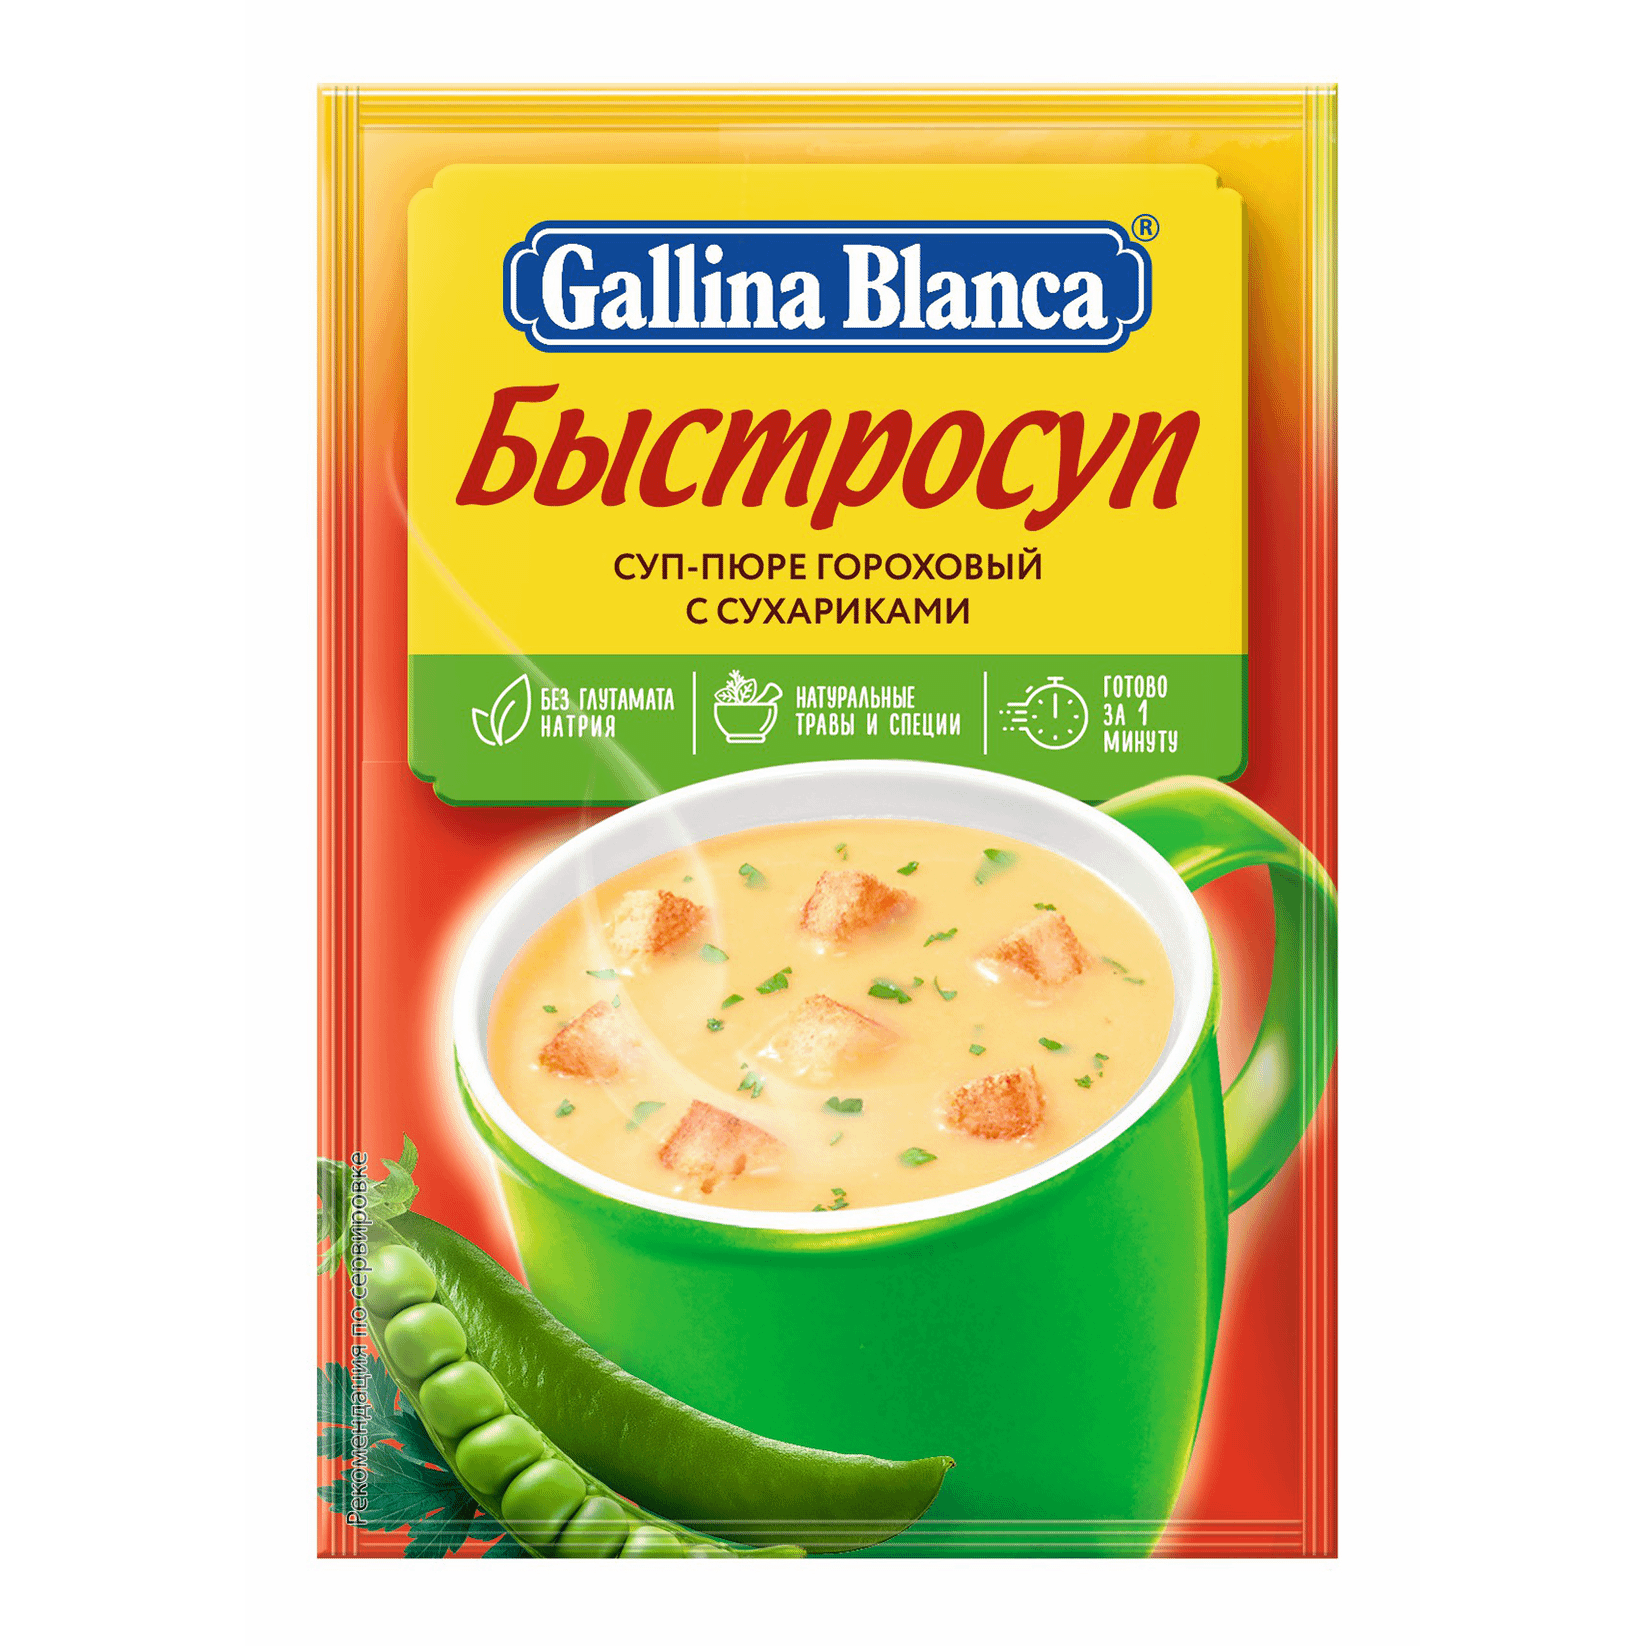 Суп-пюре Gallina Blanca гороховый с сухариками быстрого приготовления 17 г